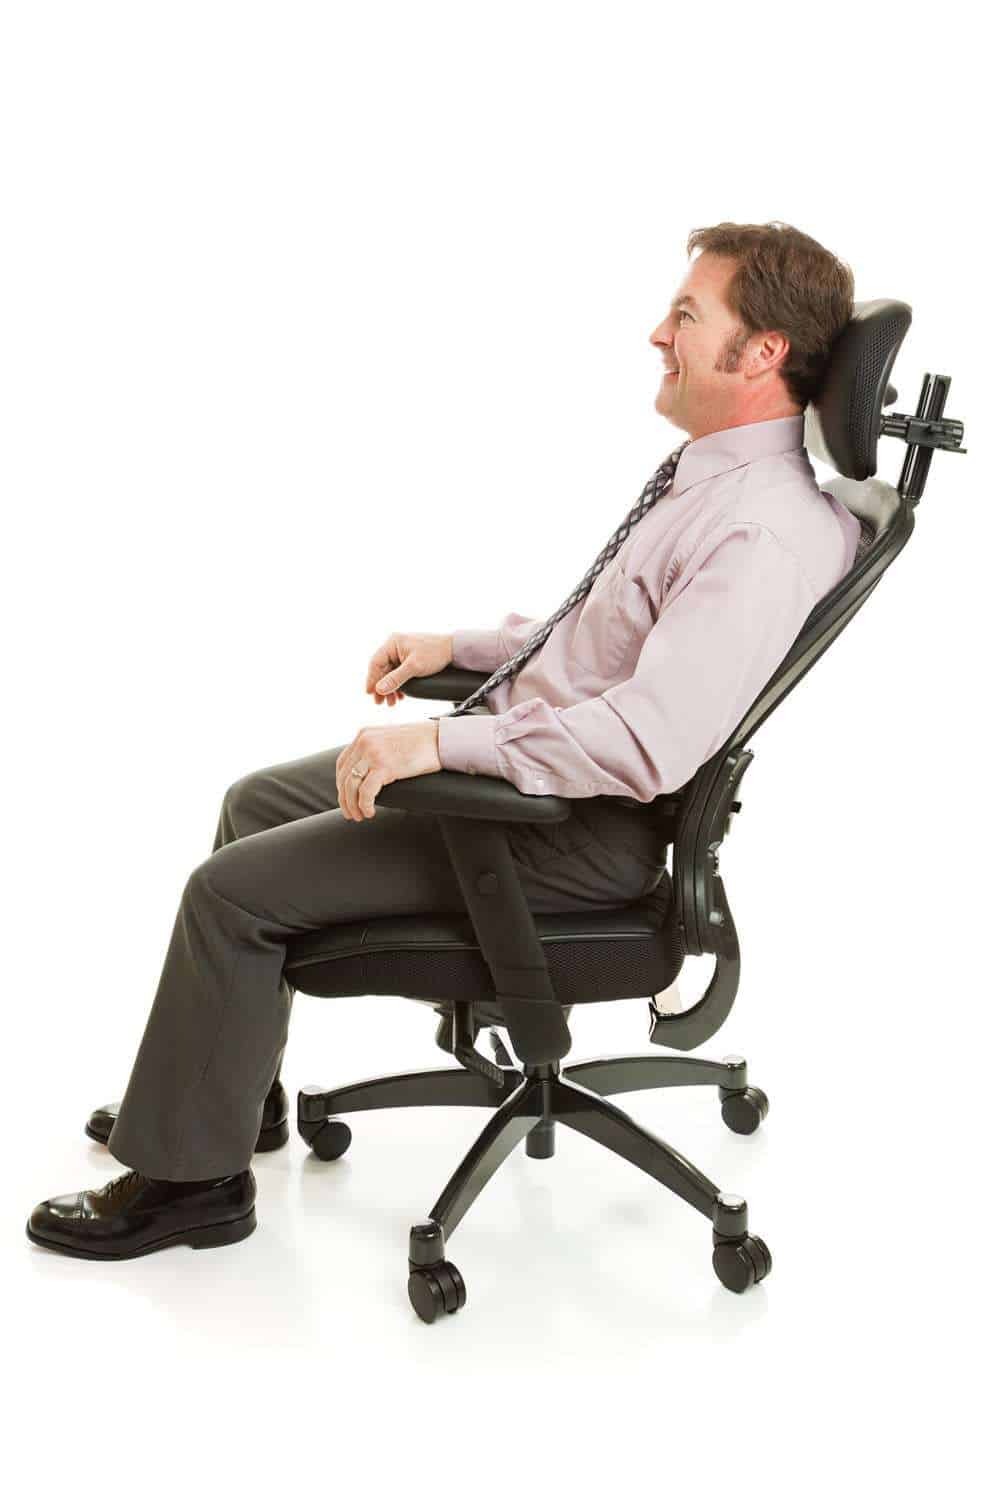 man relax on a headrest of ergonomic chair